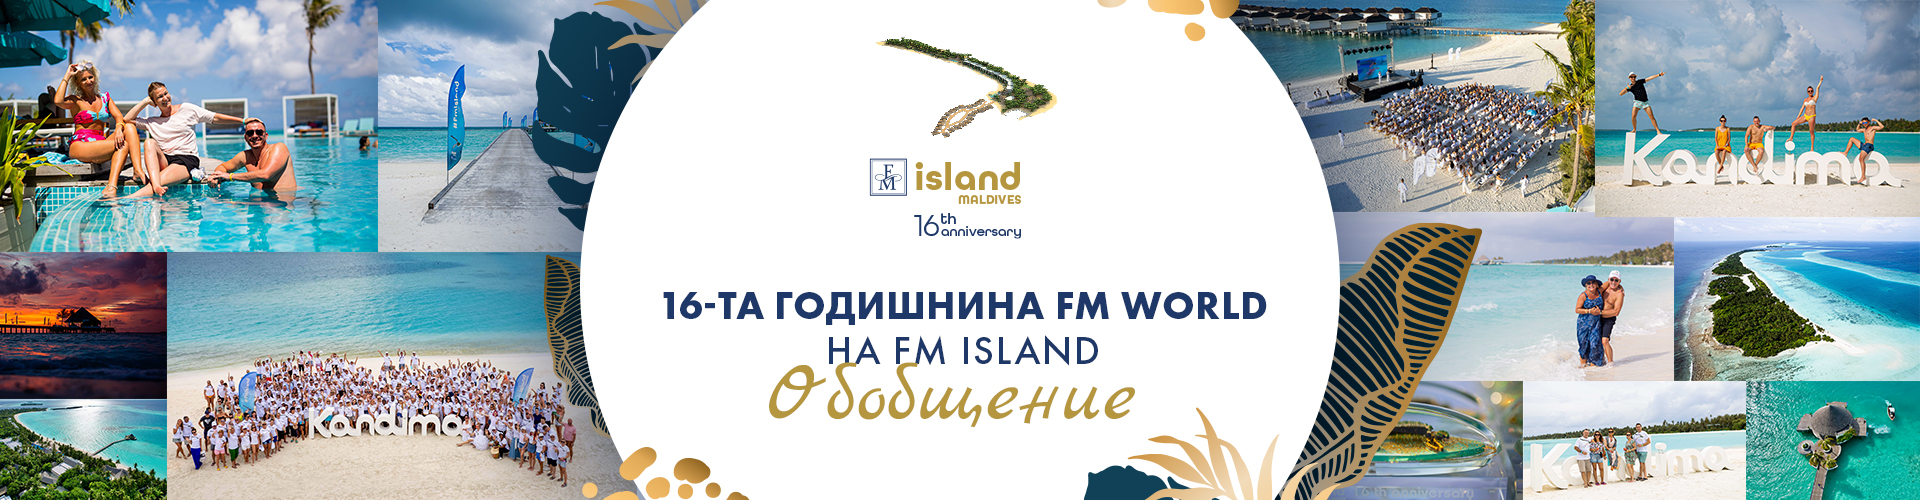 16-та годишнина FM World на FM ISLAND. обобщение